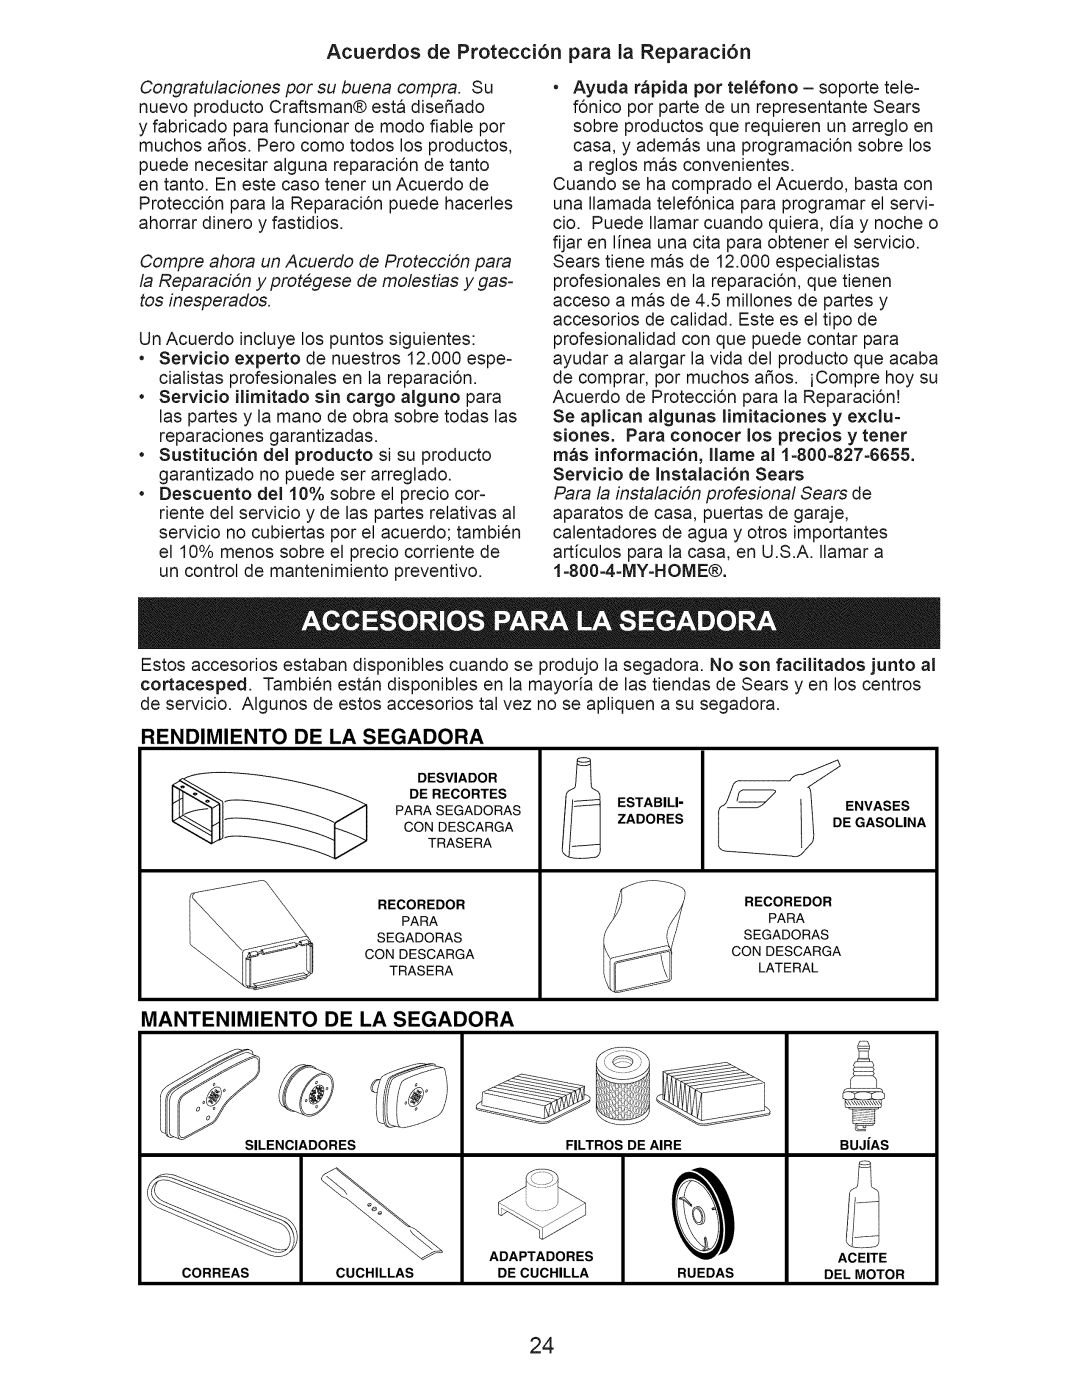 Craftsman 917.374366 Acuerdos de Protecci6n para la Reparaci6n, Rendimiento De La Segadora, Mantenimiento De La Segadora 